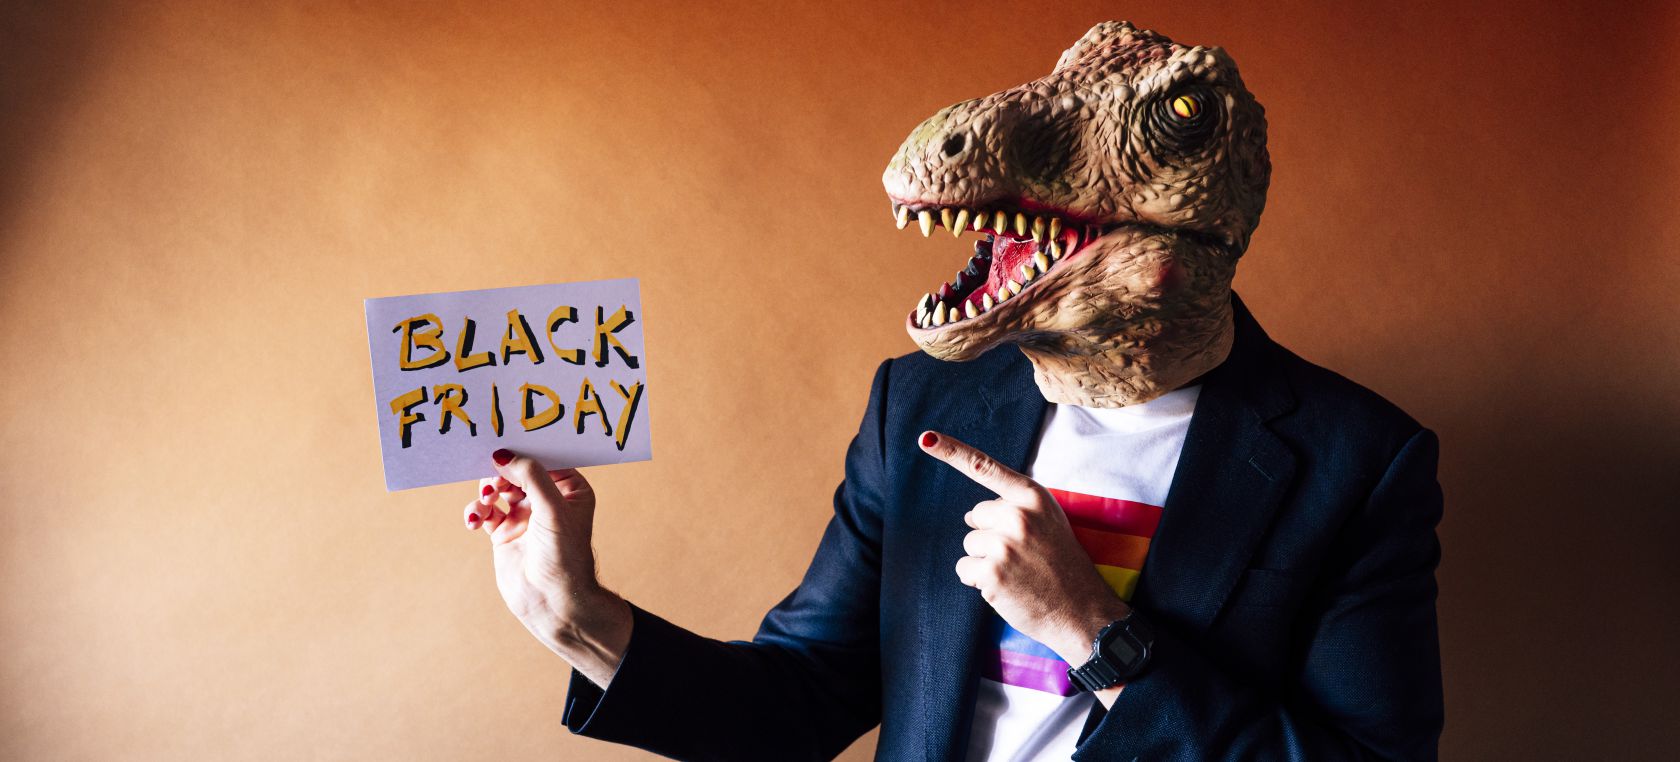 El curioso origen del Black Friday, una 'fiesta' comercial ligada al colapso